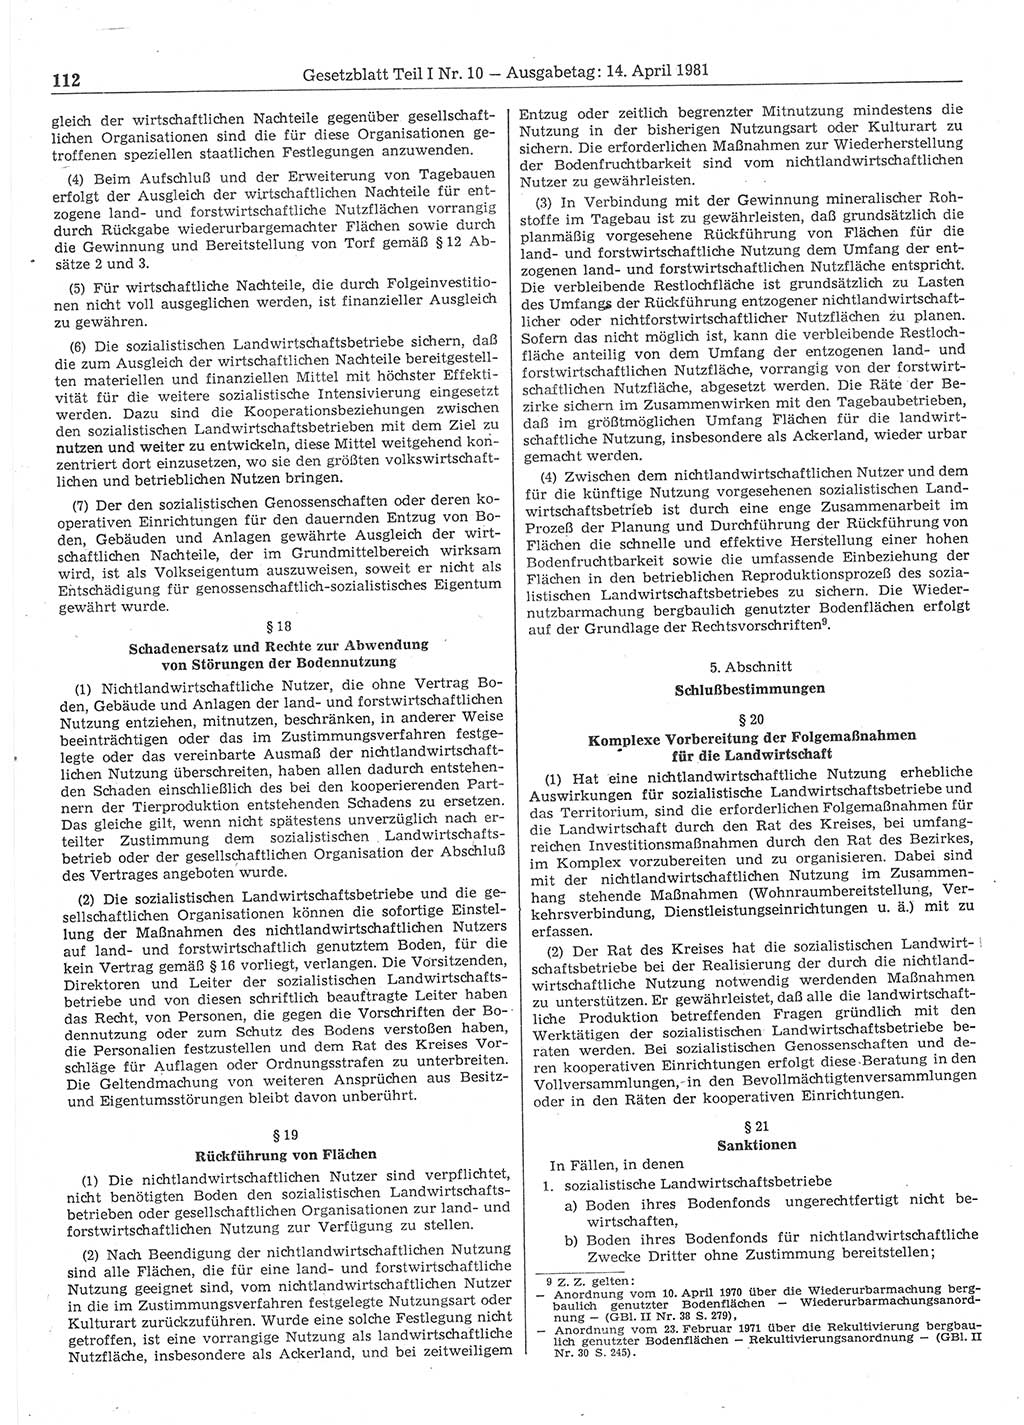 Gesetzblatt (GBl.) der Deutschen Demokratischen Republik (DDR) Teil Ⅰ 1981, Seite 112 (GBl. DDR Ⅰ 1981, S. 112)